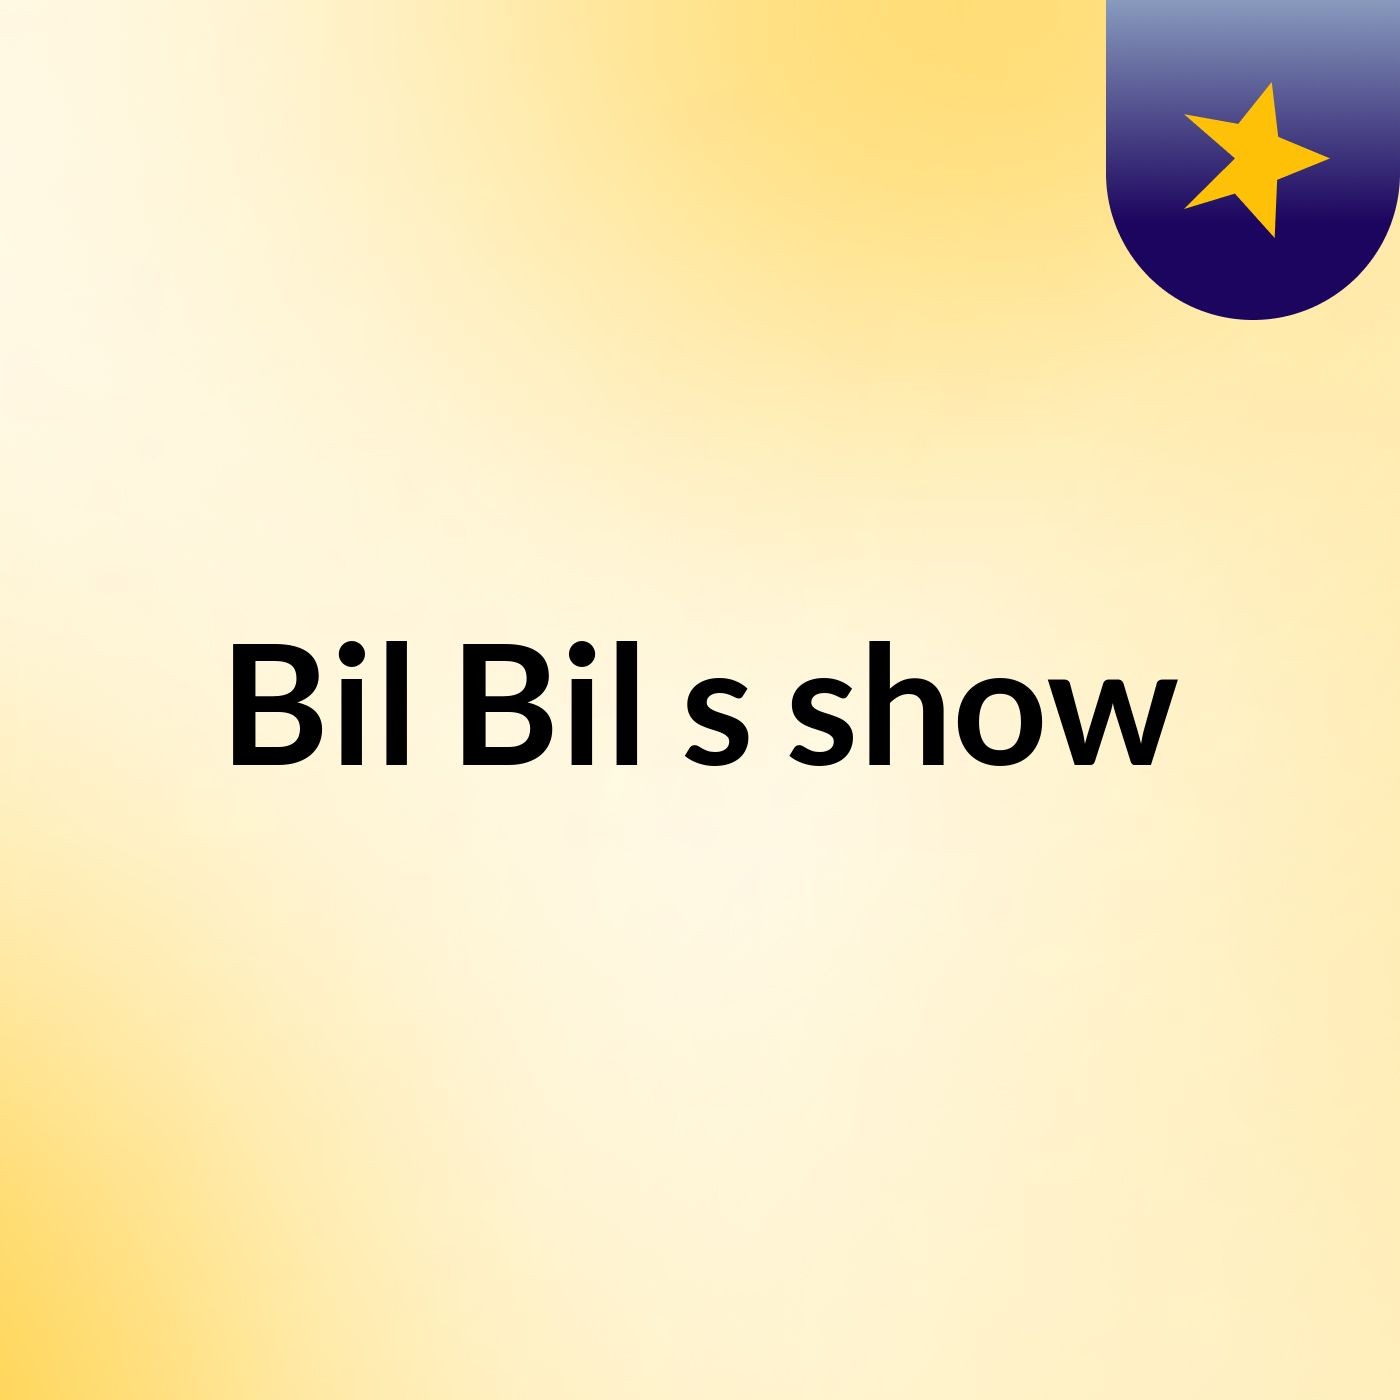 Bil Bil's show